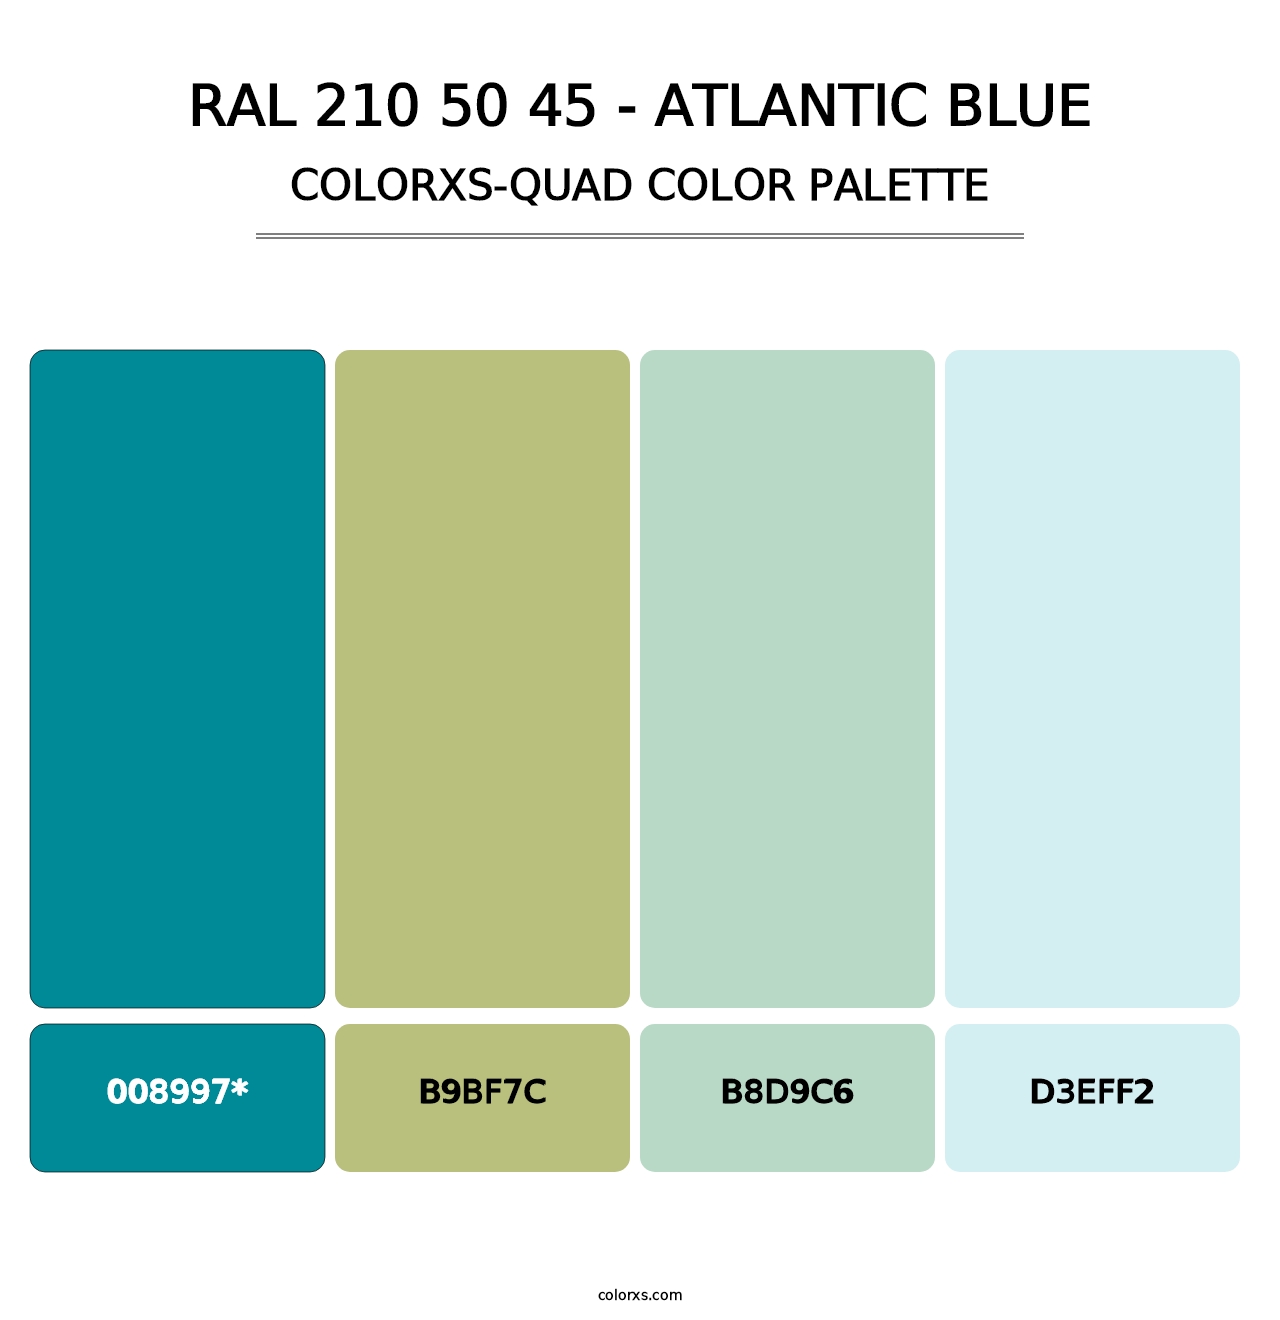 RAL 210 50 45 - Atlantic Blue - Colorxs Quad Palette